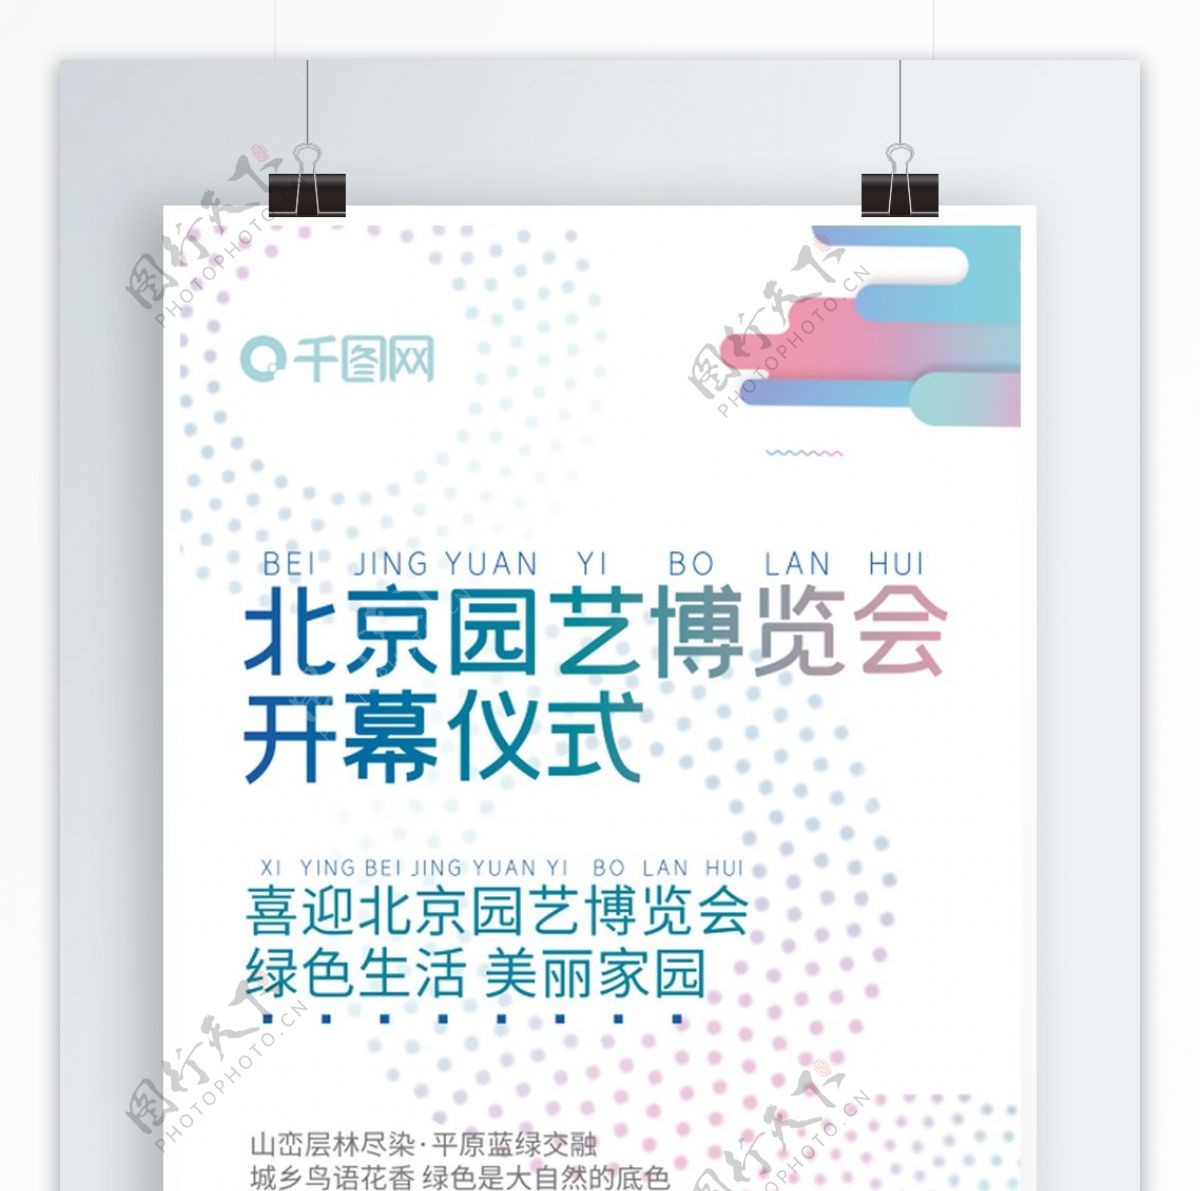 北京园艺博览会开幕大气海报排版设计